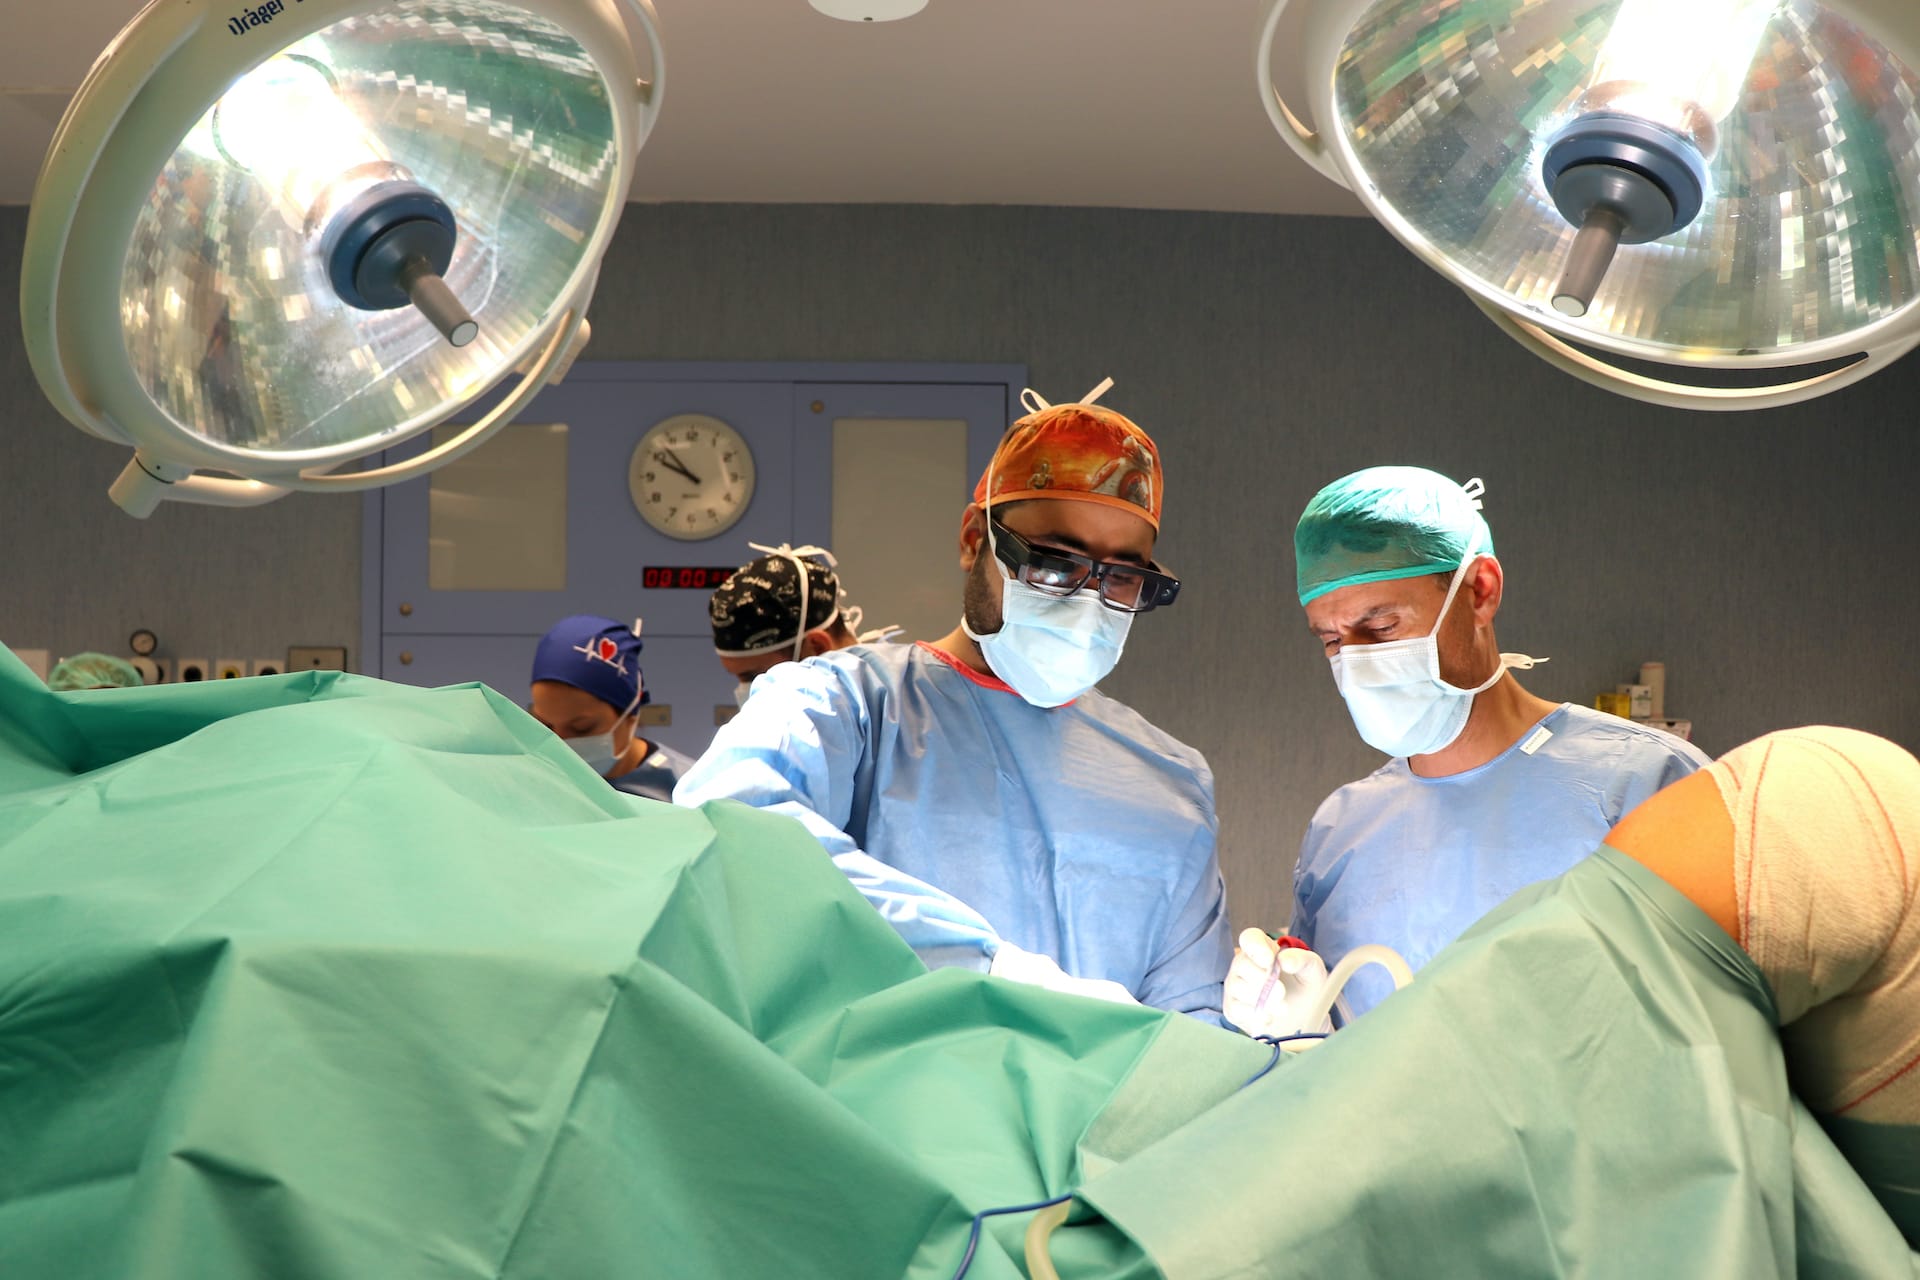 Hospitales Universitarios San Roque estrena en Europa gafas virtuales para la retransmisión de cirugía en directo.